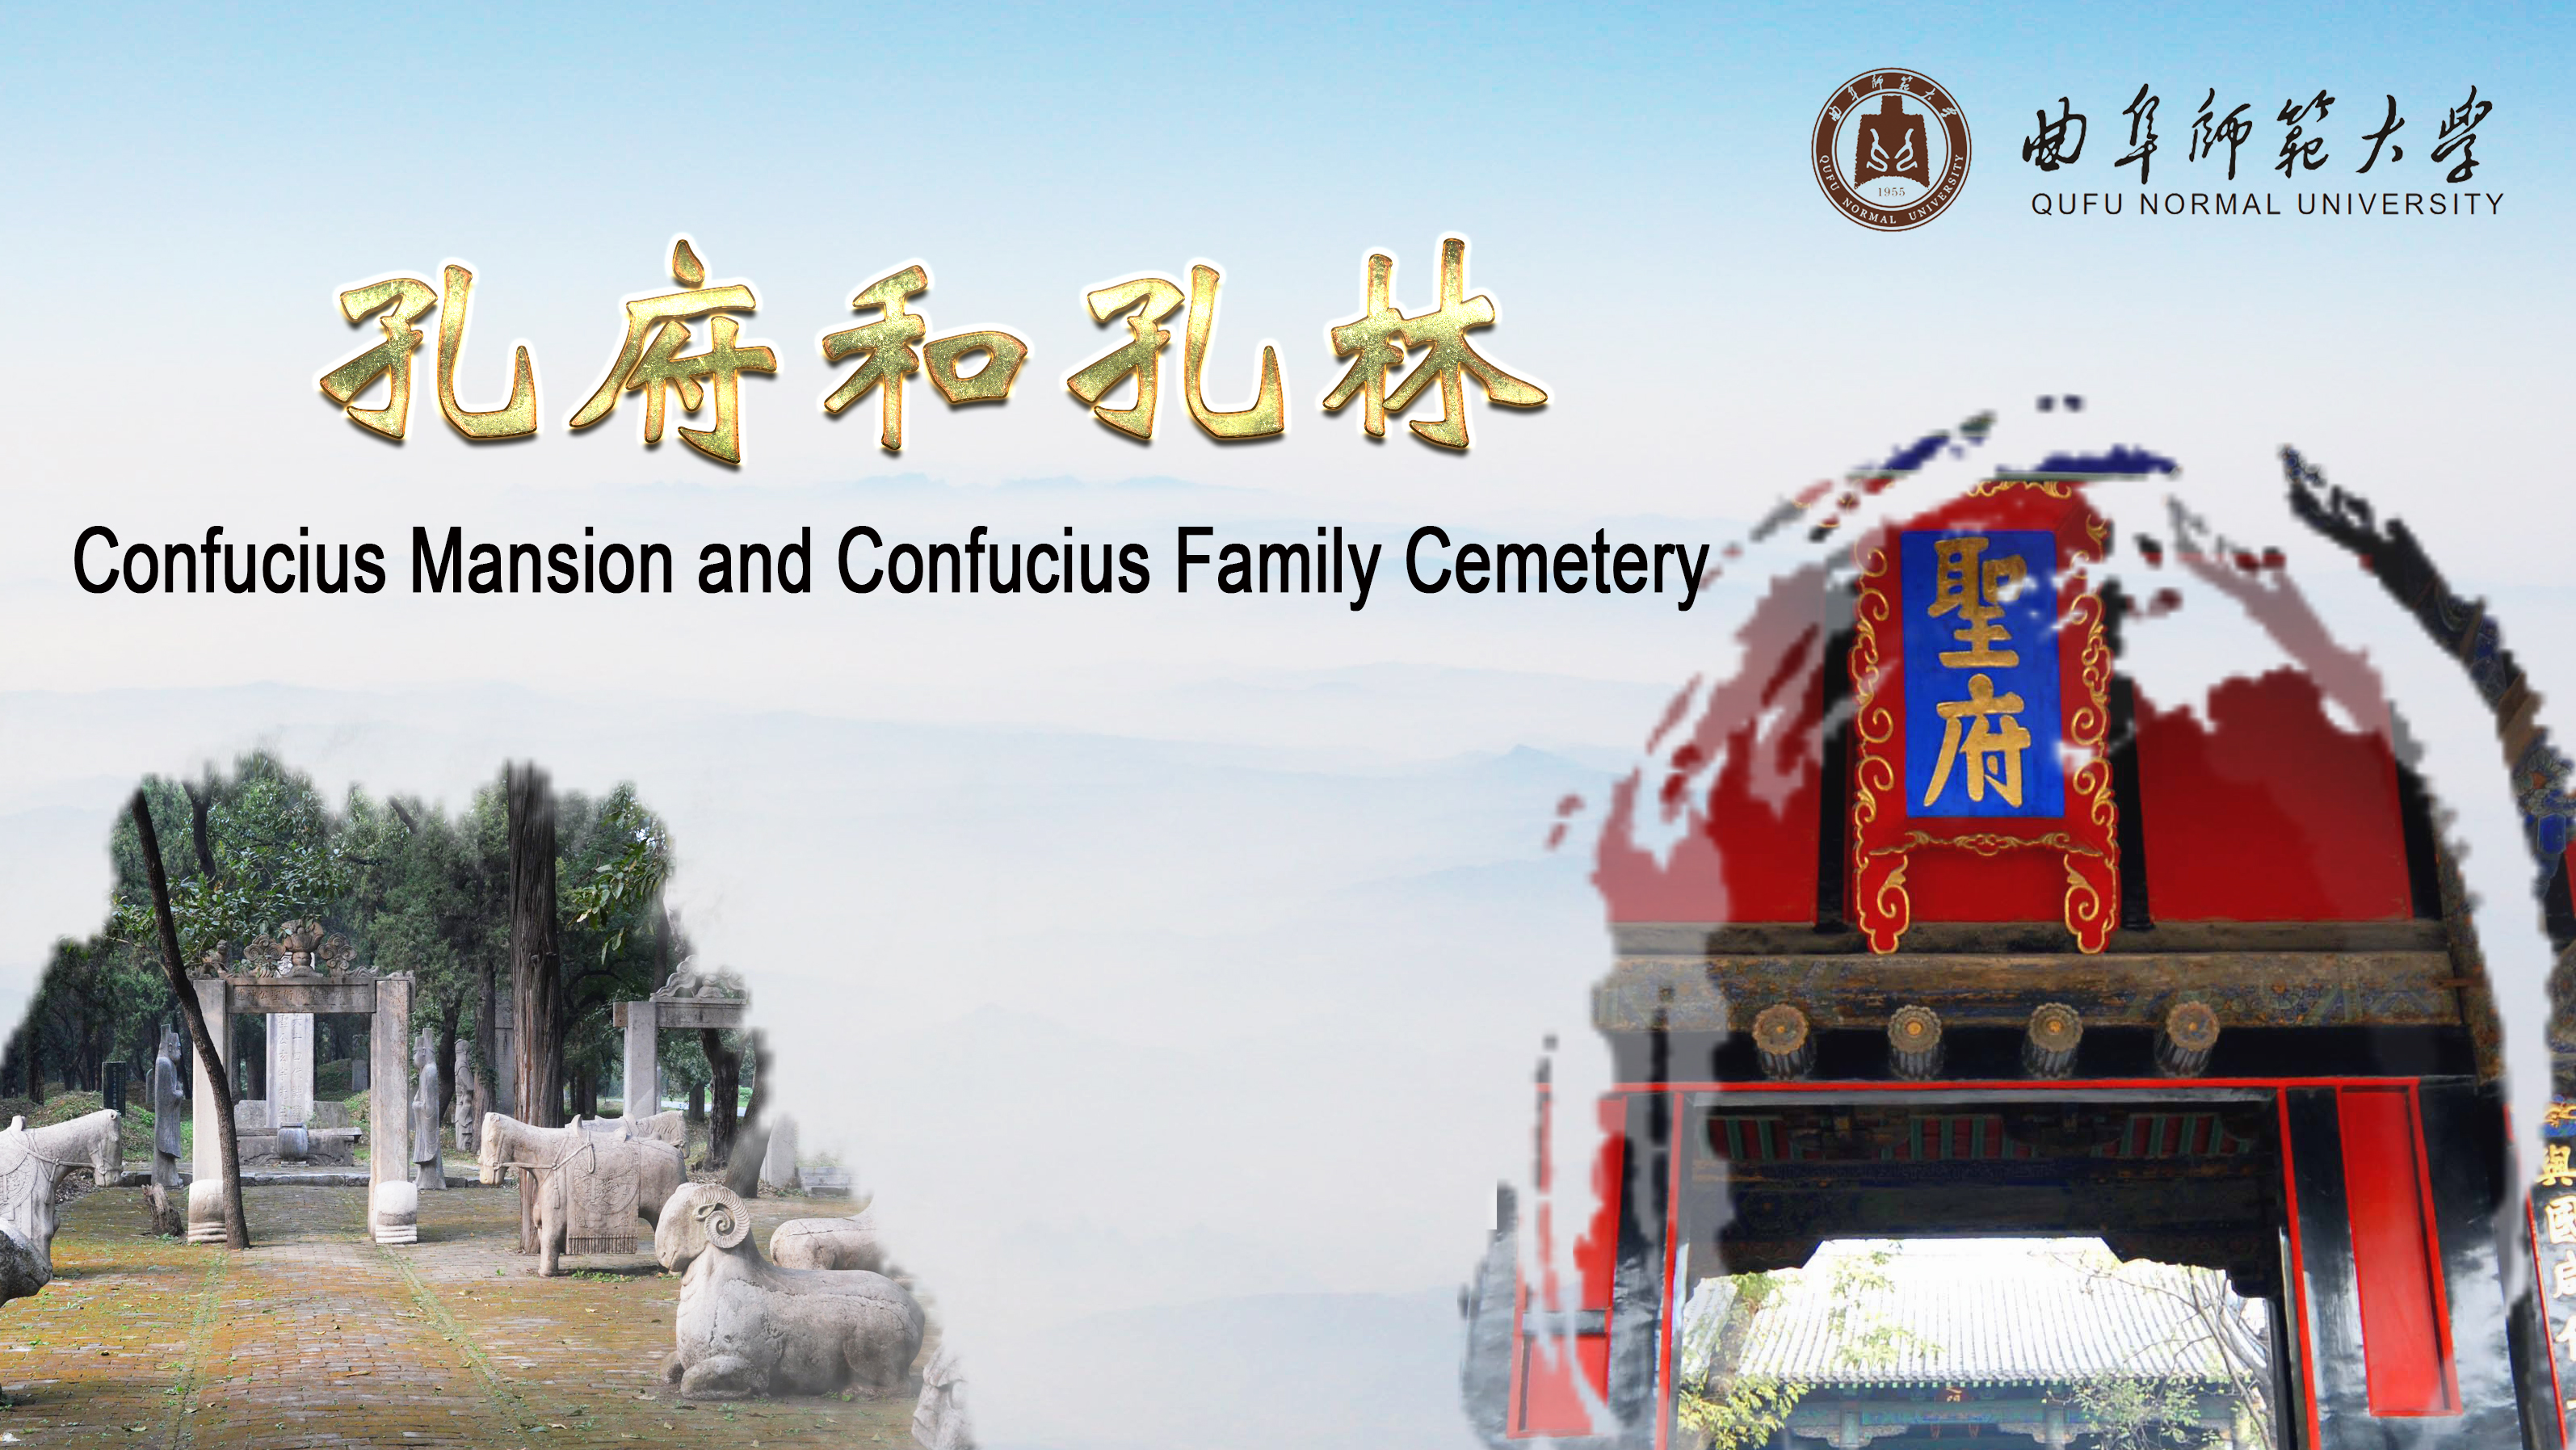 Confucius Mansion and Confucius Family Cemetery